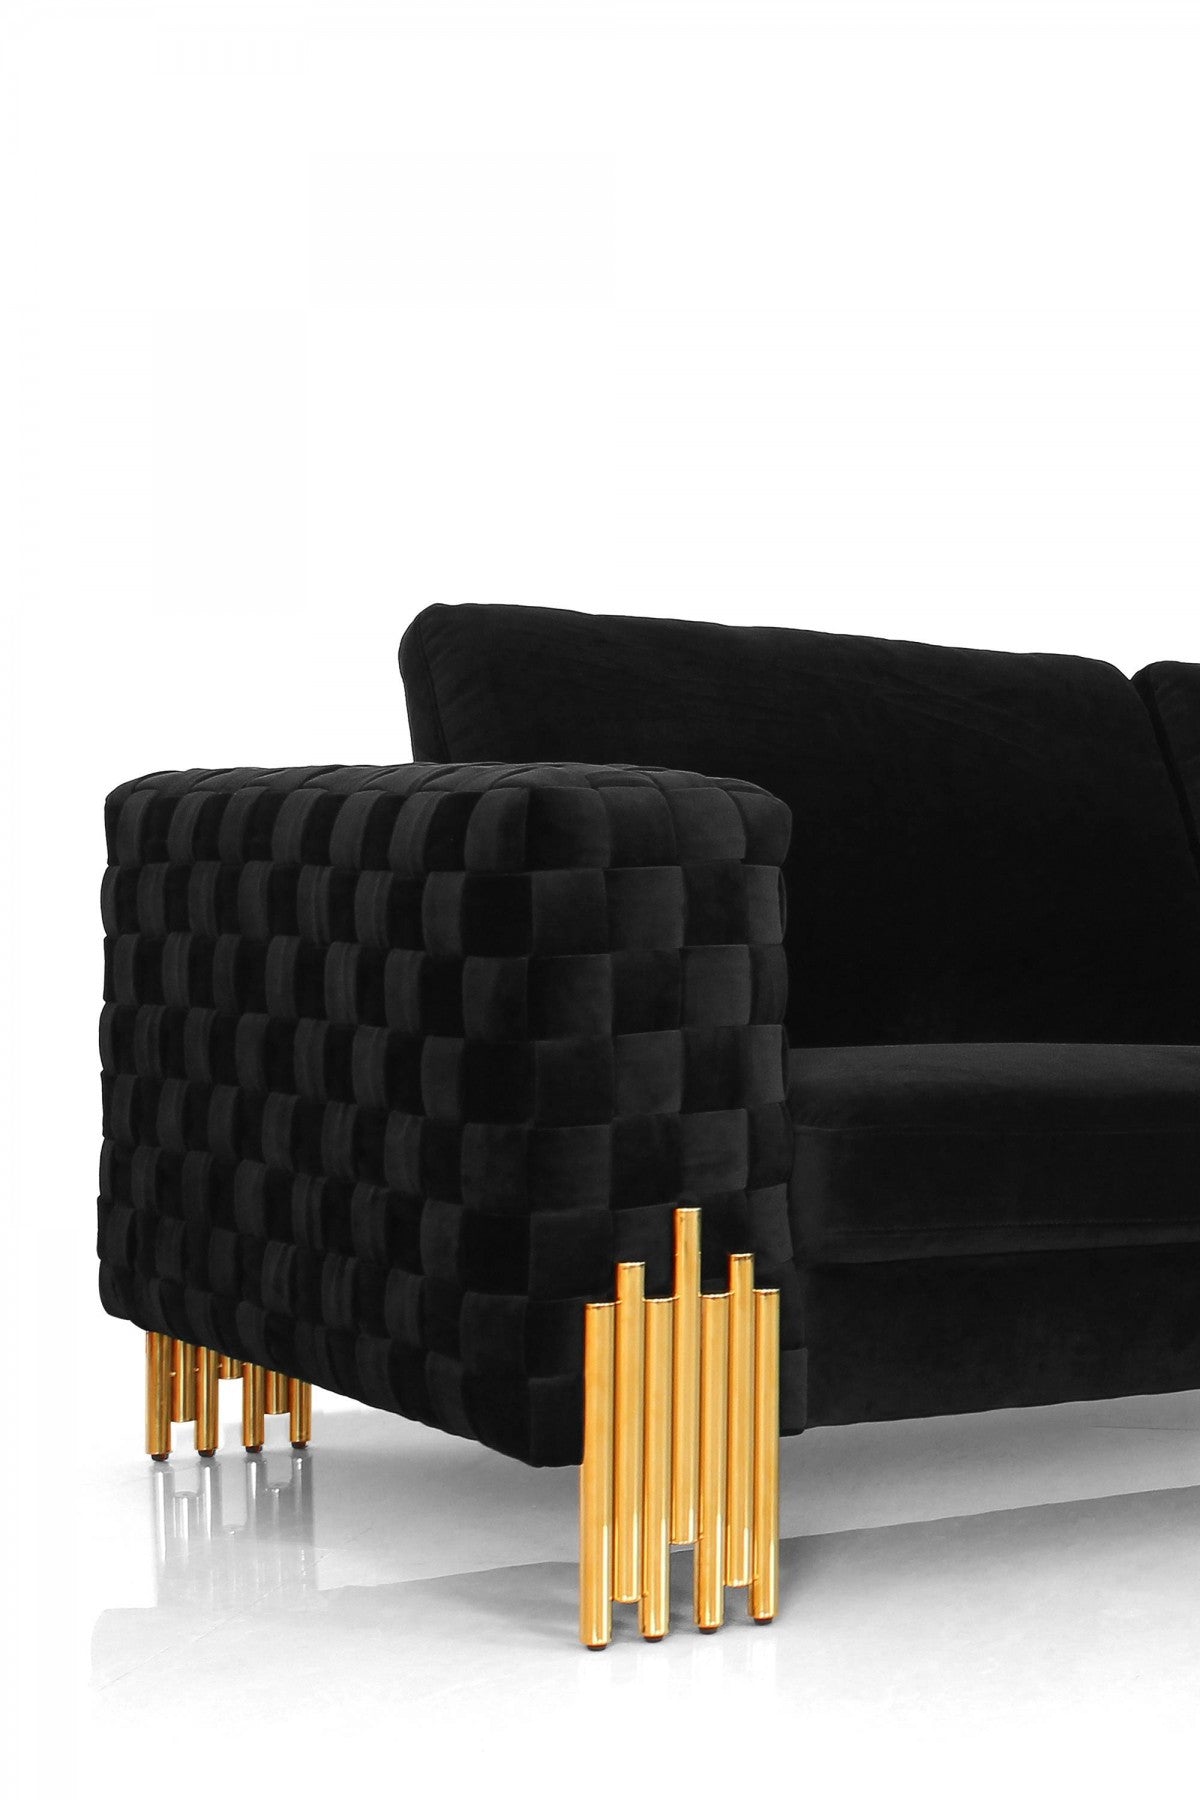 95" Black Velvet Sofa With Gold Legs